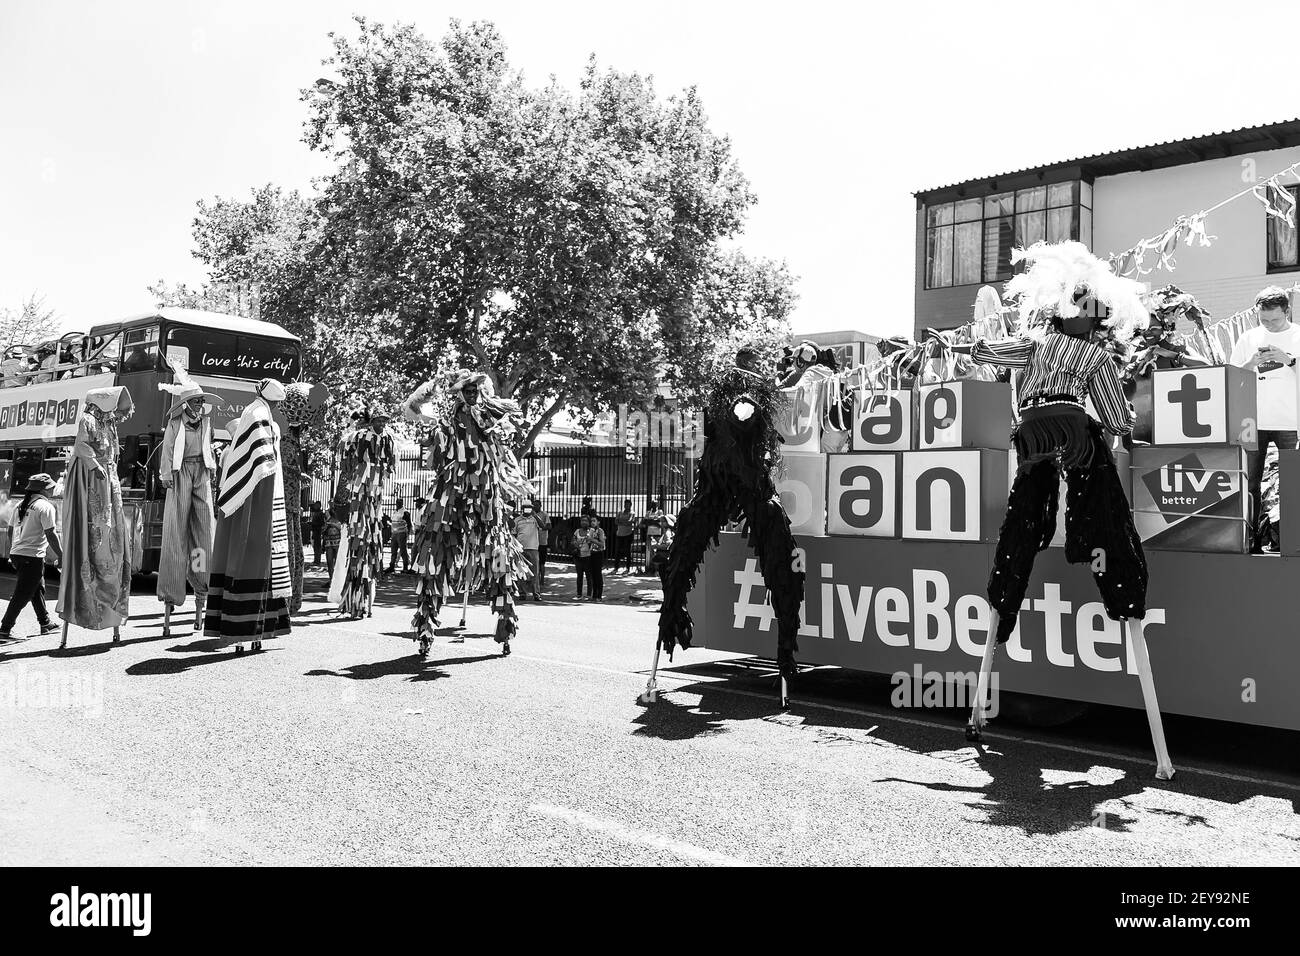 JOHANNESBURG, SÜDAFRIKA - 05. Jan 2021: Pretoria, Südafrika - 24 2016. September: Festwagen und Kostümen beim Gauteng Karneval in Prt Stockfoto